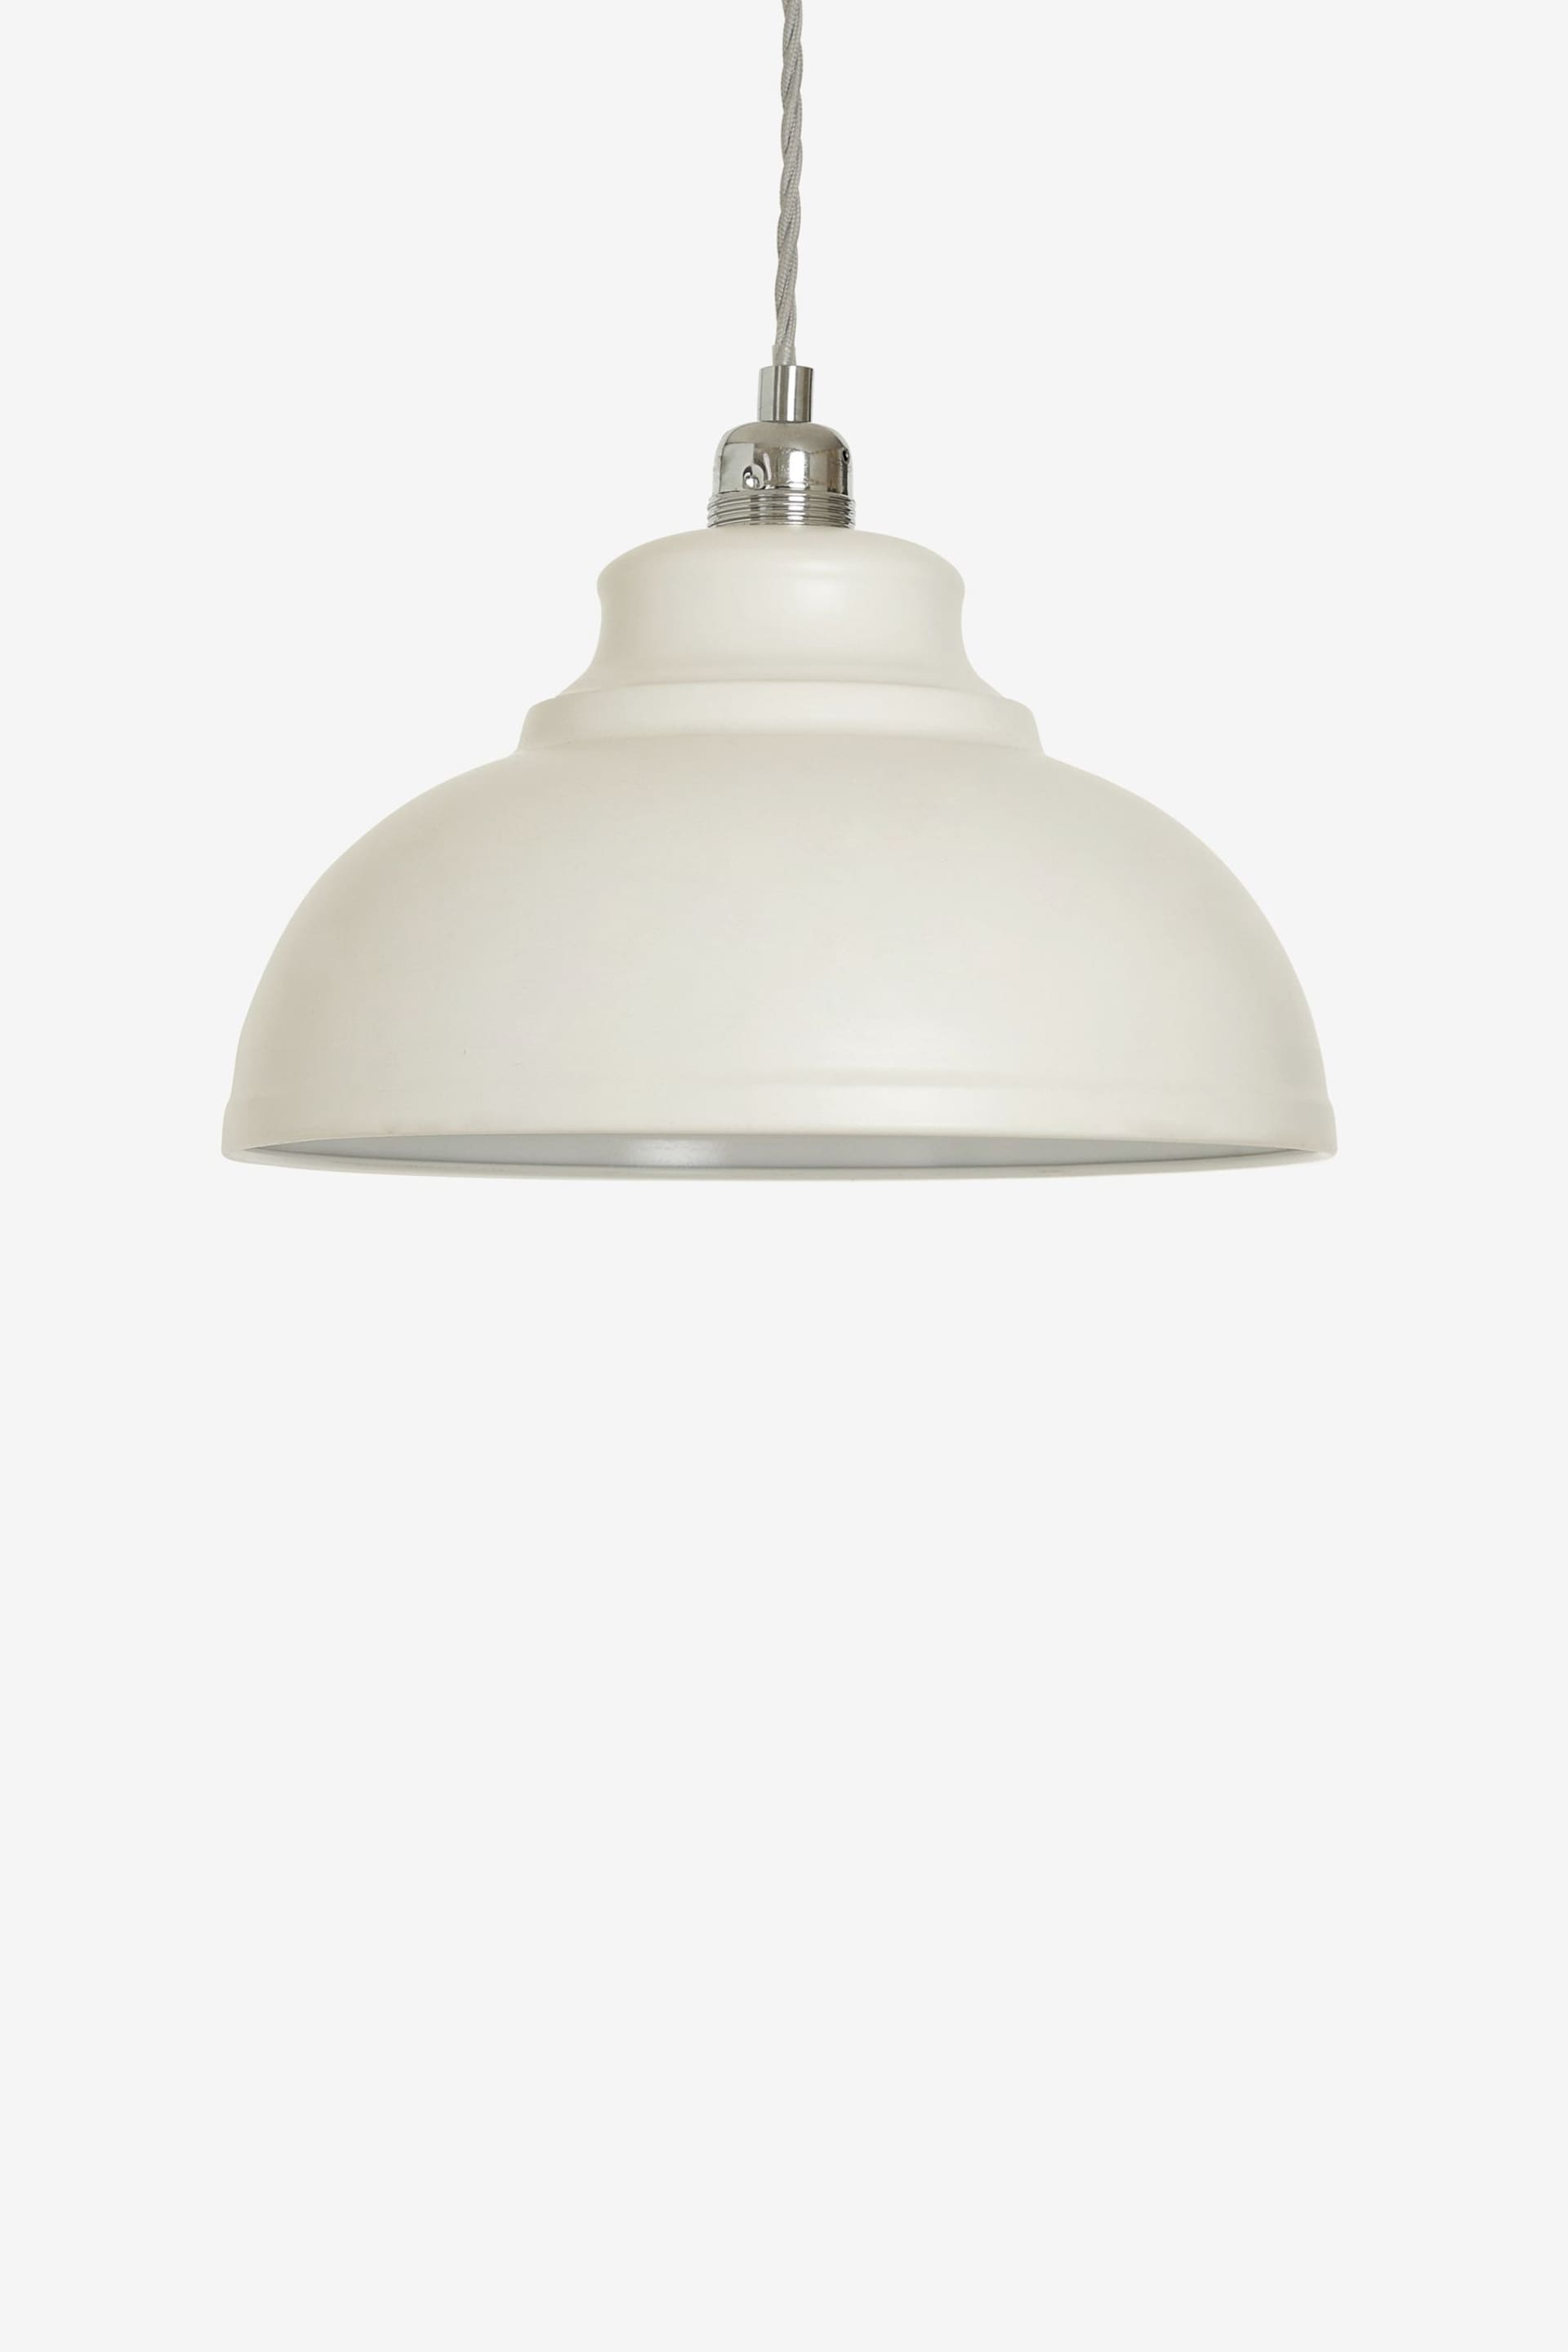 Cream Dixon Easy Fit Pendant Lamp Shade - Image 2 of 4